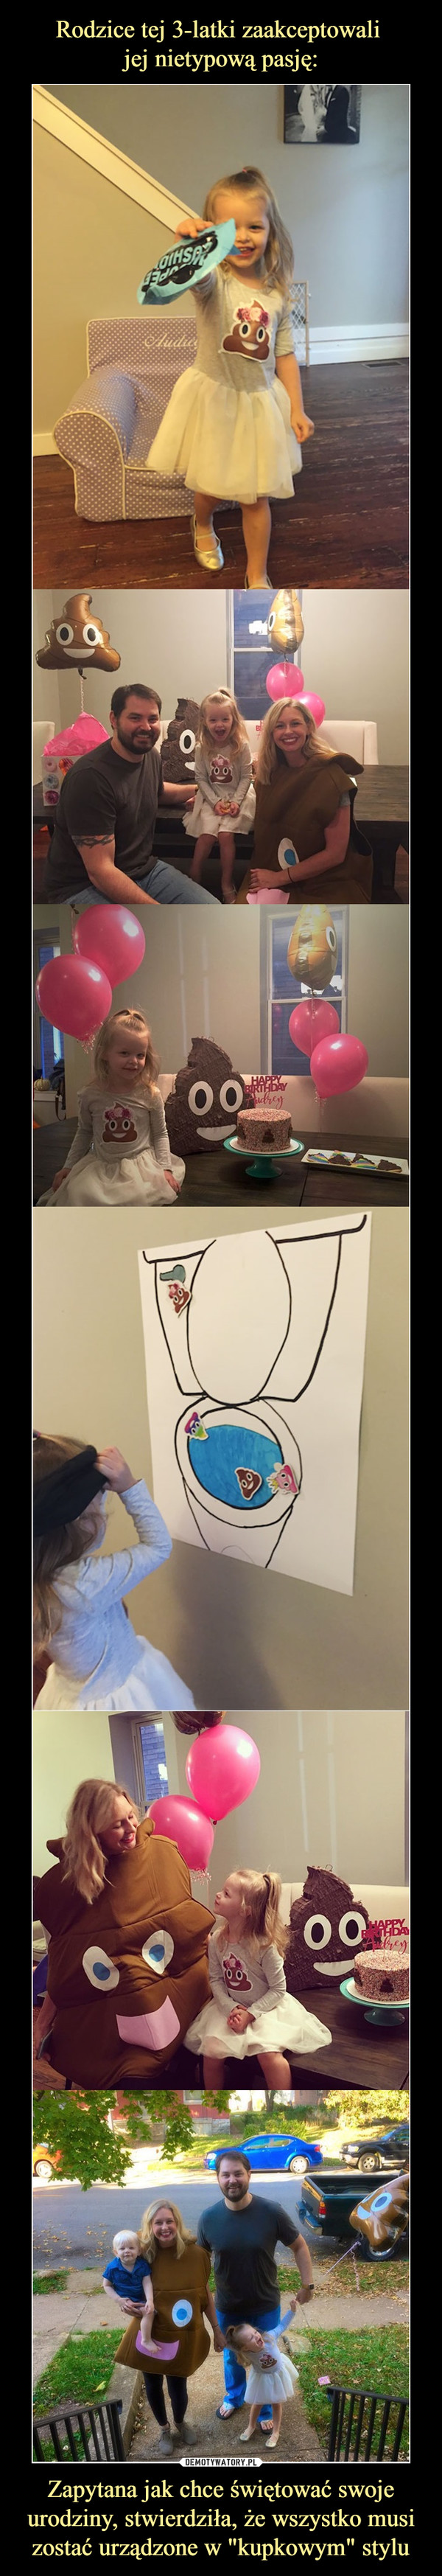 Rodzice tej 3-latki zaakceptowali 
jej nietypową pasję: Zapytana jak chce świętować swoje urodziny, stwierdziła, że wszystko musi zostać urządzone w "kupkowym" stylu